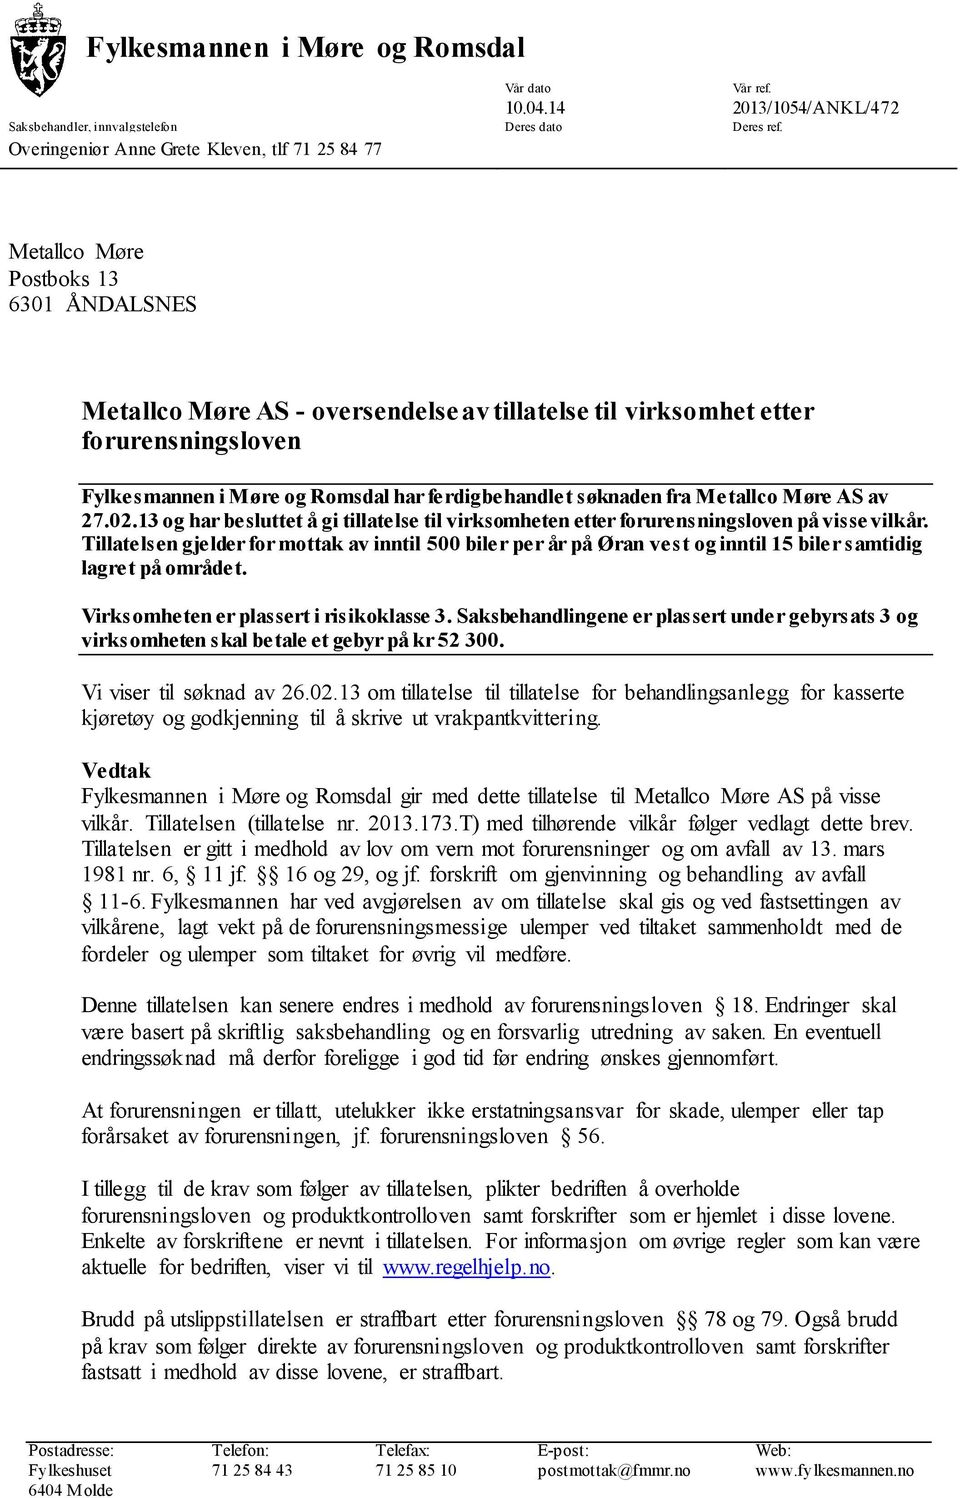 Møre AS av 27.02.13 og har besluttet å gi tillatelse til virksomheten etter forurensningsloven på visse vilkår.